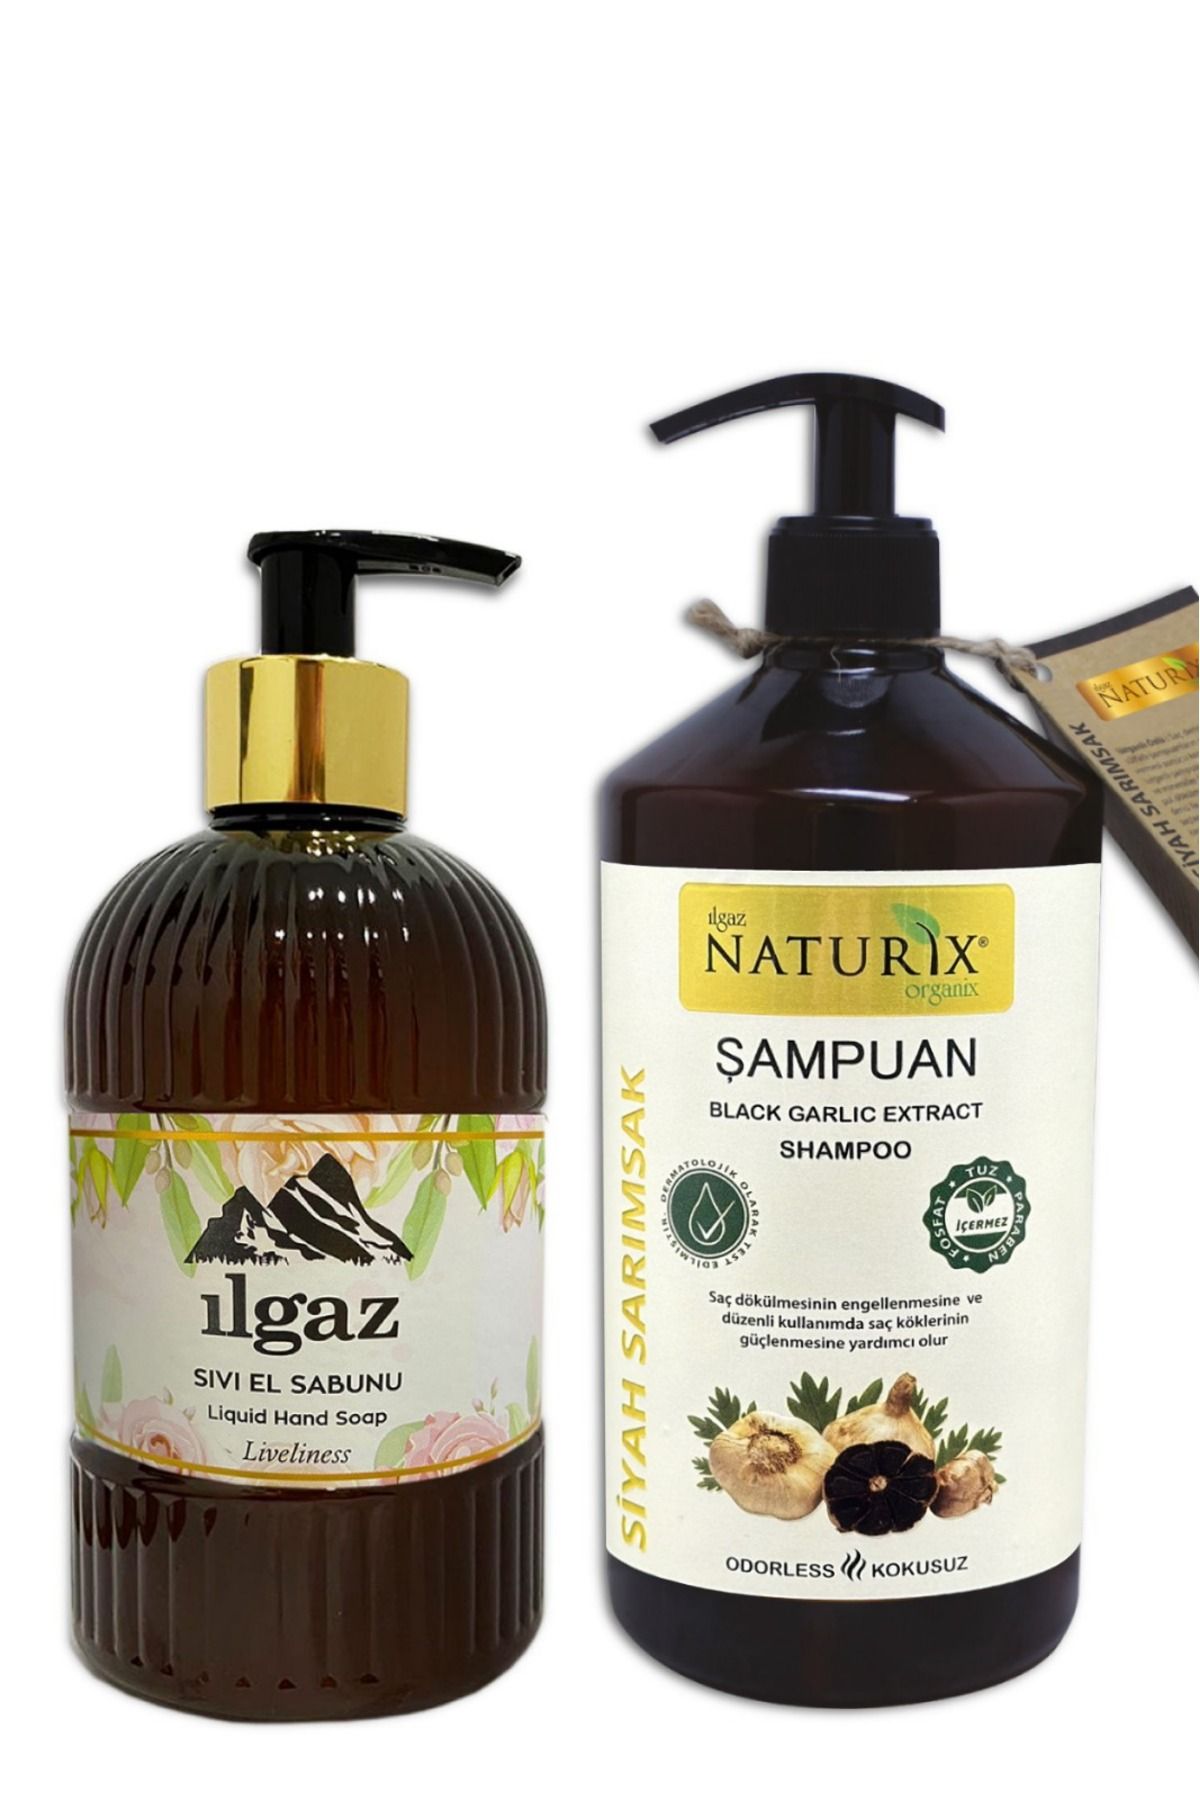 Naturix Tüm Saçlara Doğal Siyah Sarımsak Özlü Şampuan 600 ml  Pudra Kokusu Nemlendirici Sıvı Sabun 475 ml